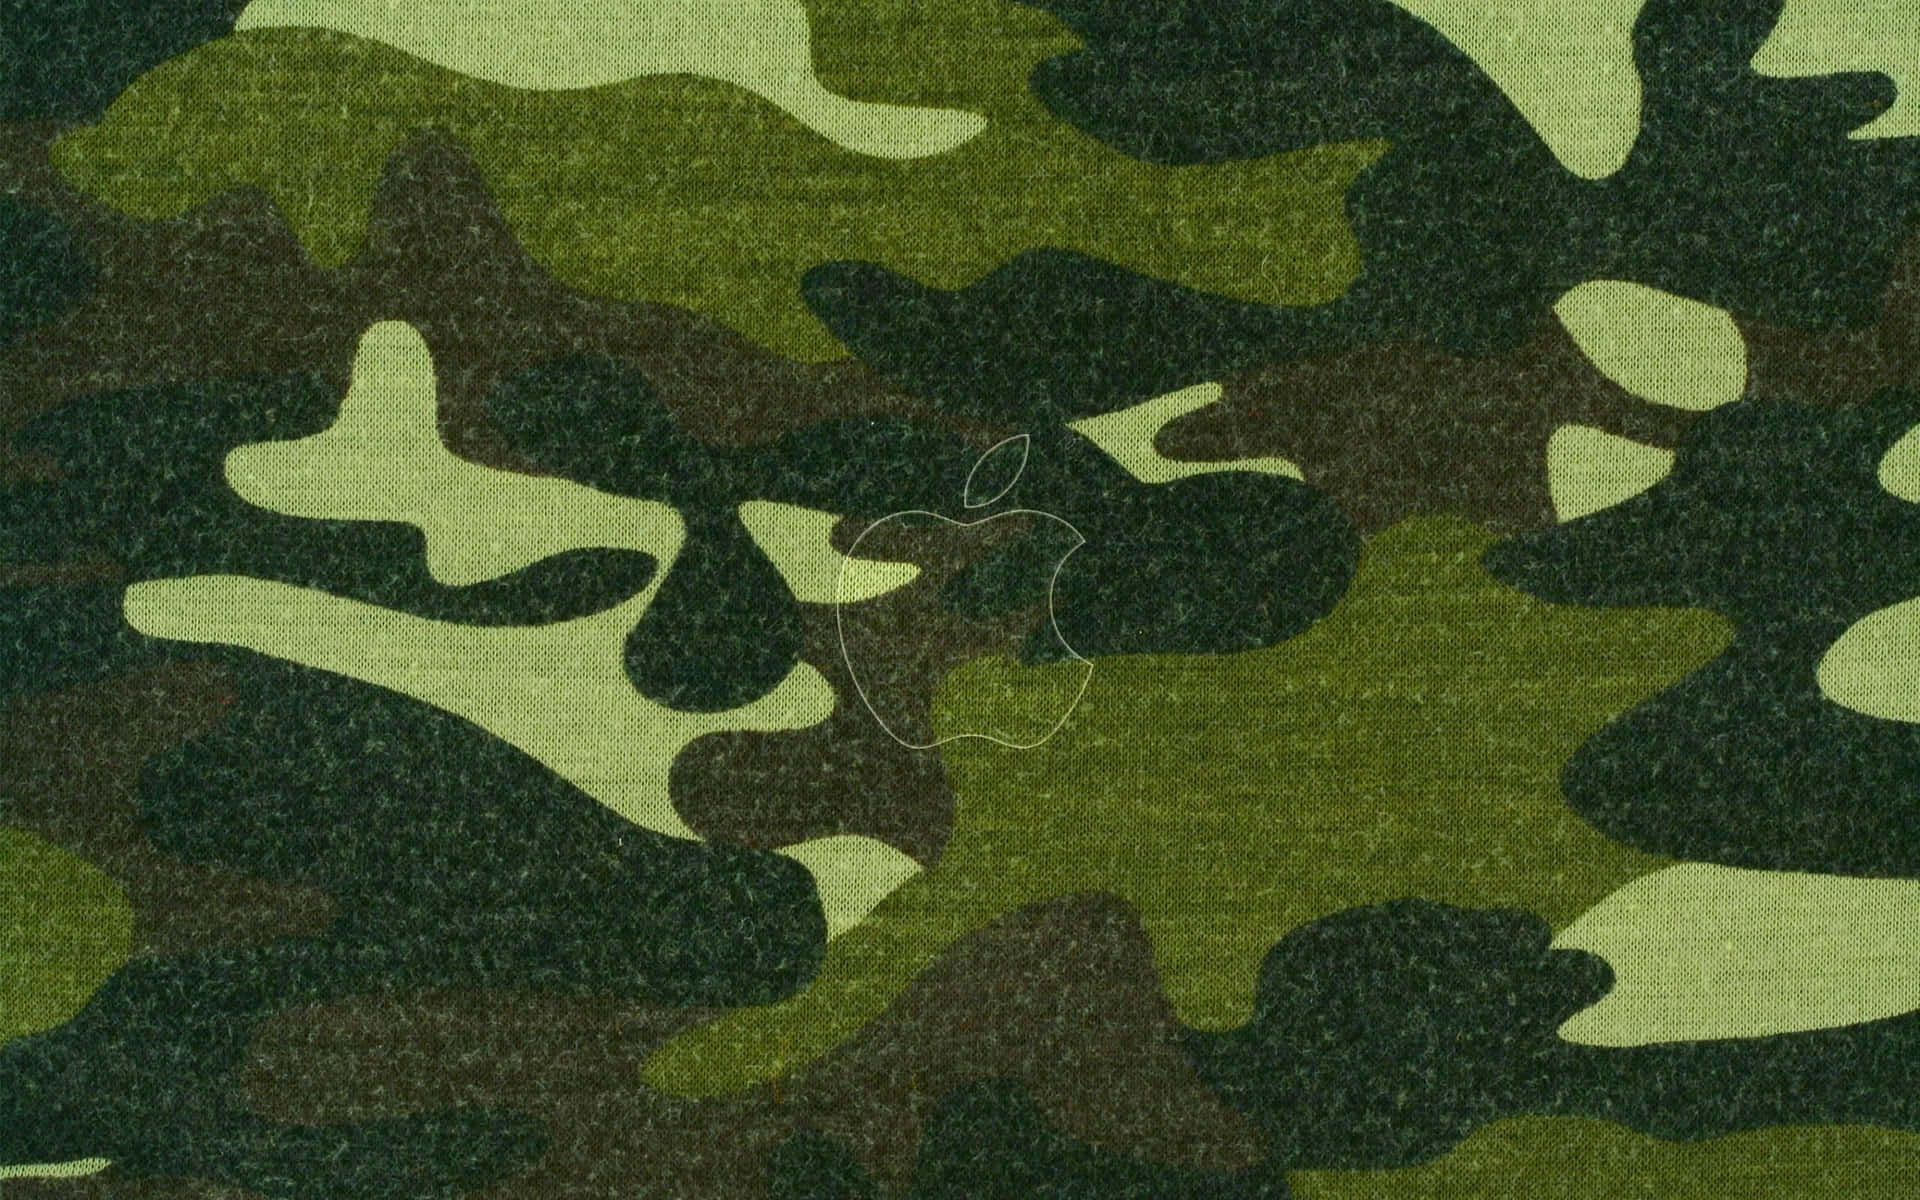 Imagenun Elegante Patrón De Camuflaje En Verde Vibrante. Fondo de pantalla